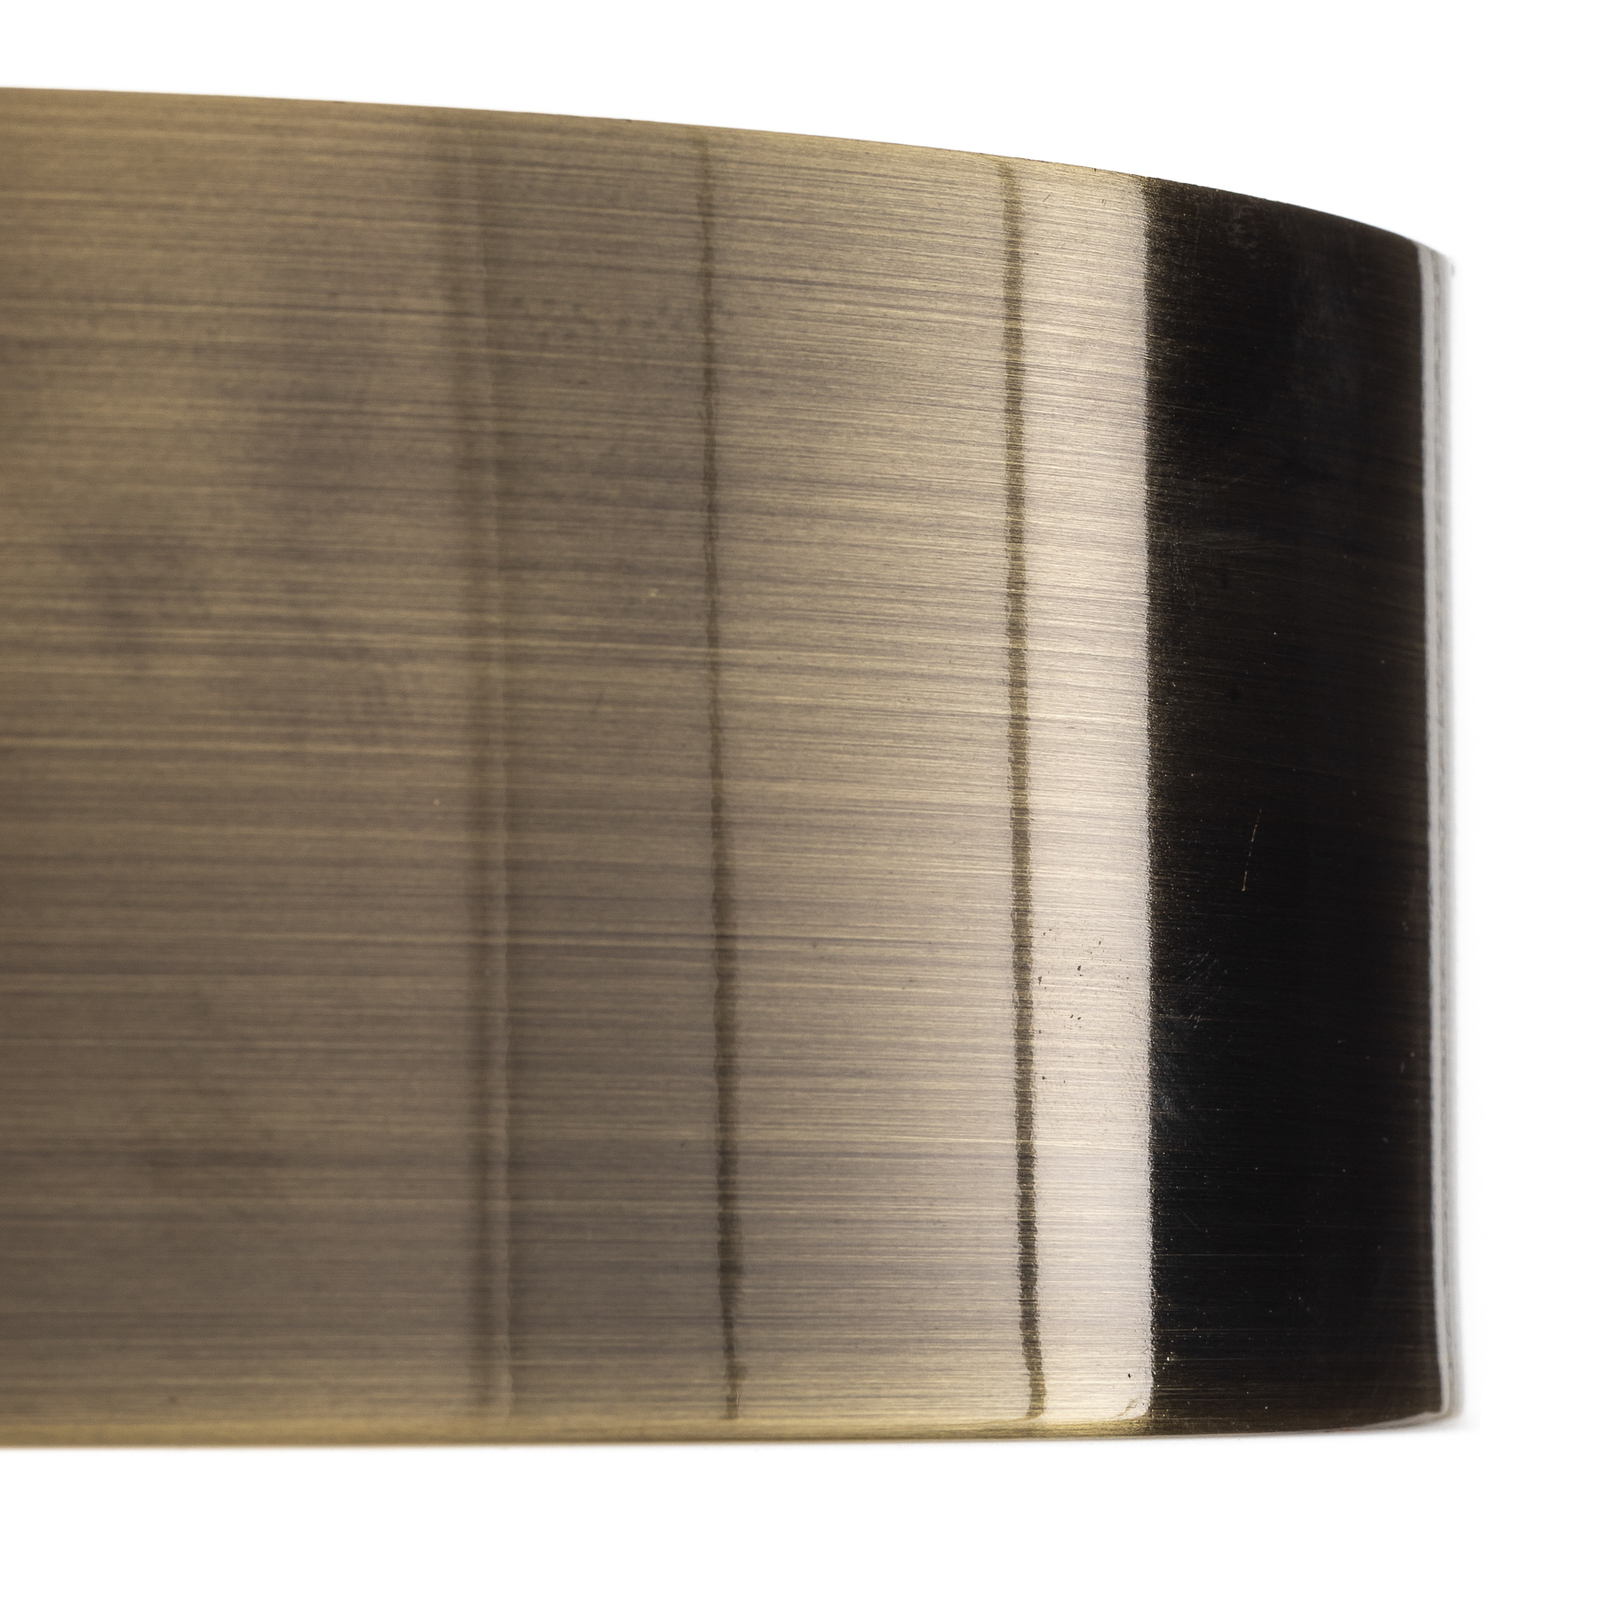 Kimban metāla griestu gaisma, Ø 26 cm, patina